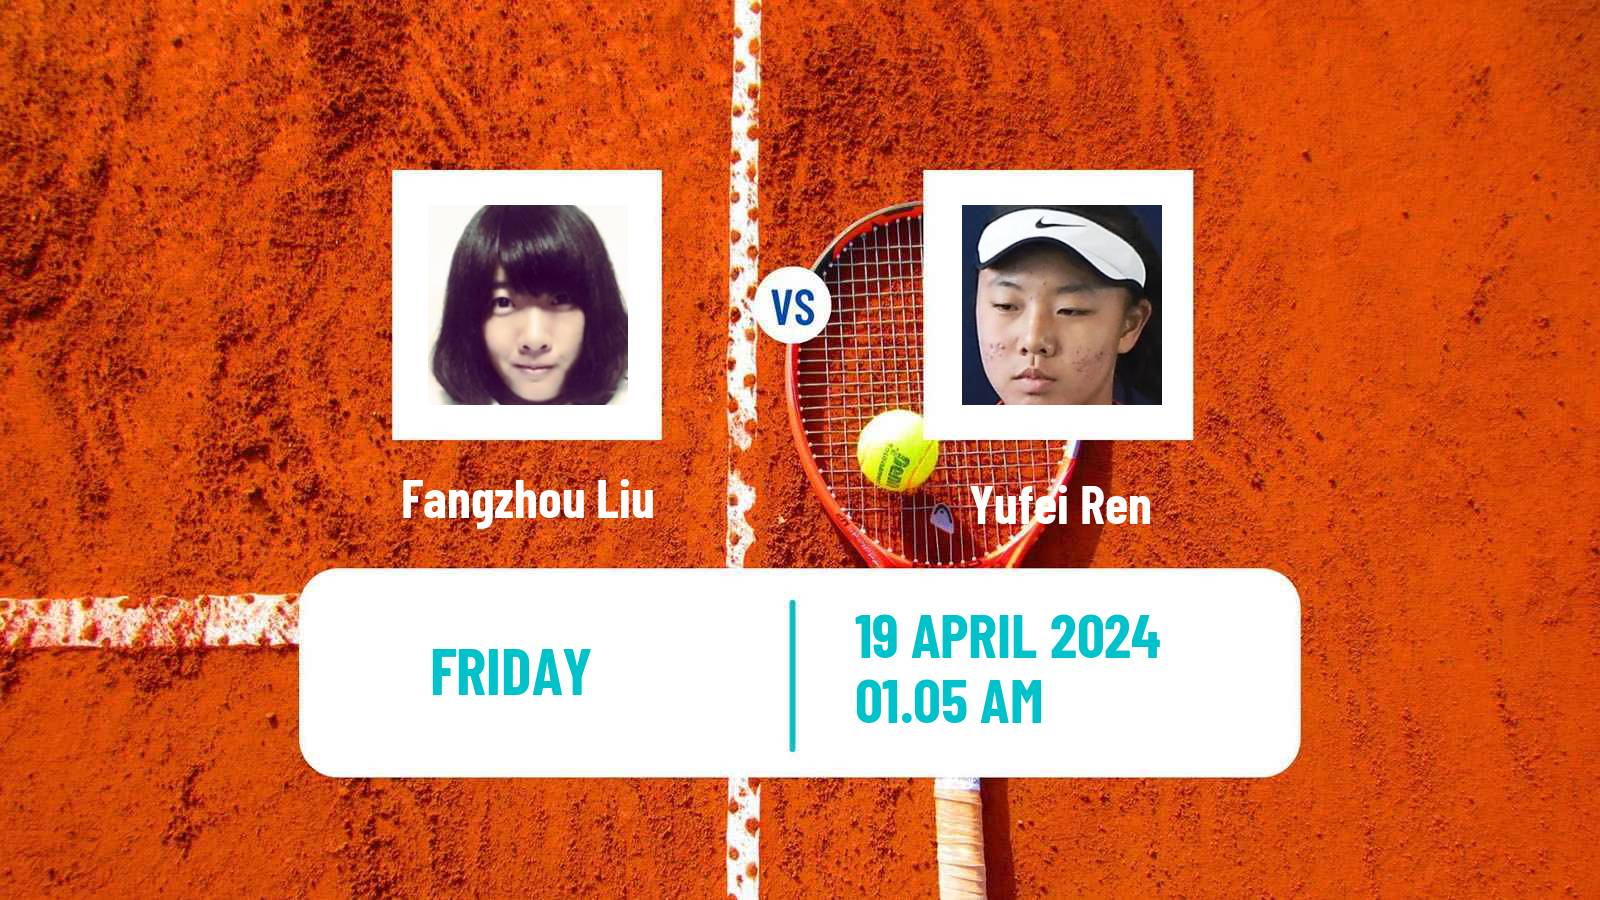 Tennis ITF W50 Shenzhen 2 Women Fangzhou Liu - Yufei Ren